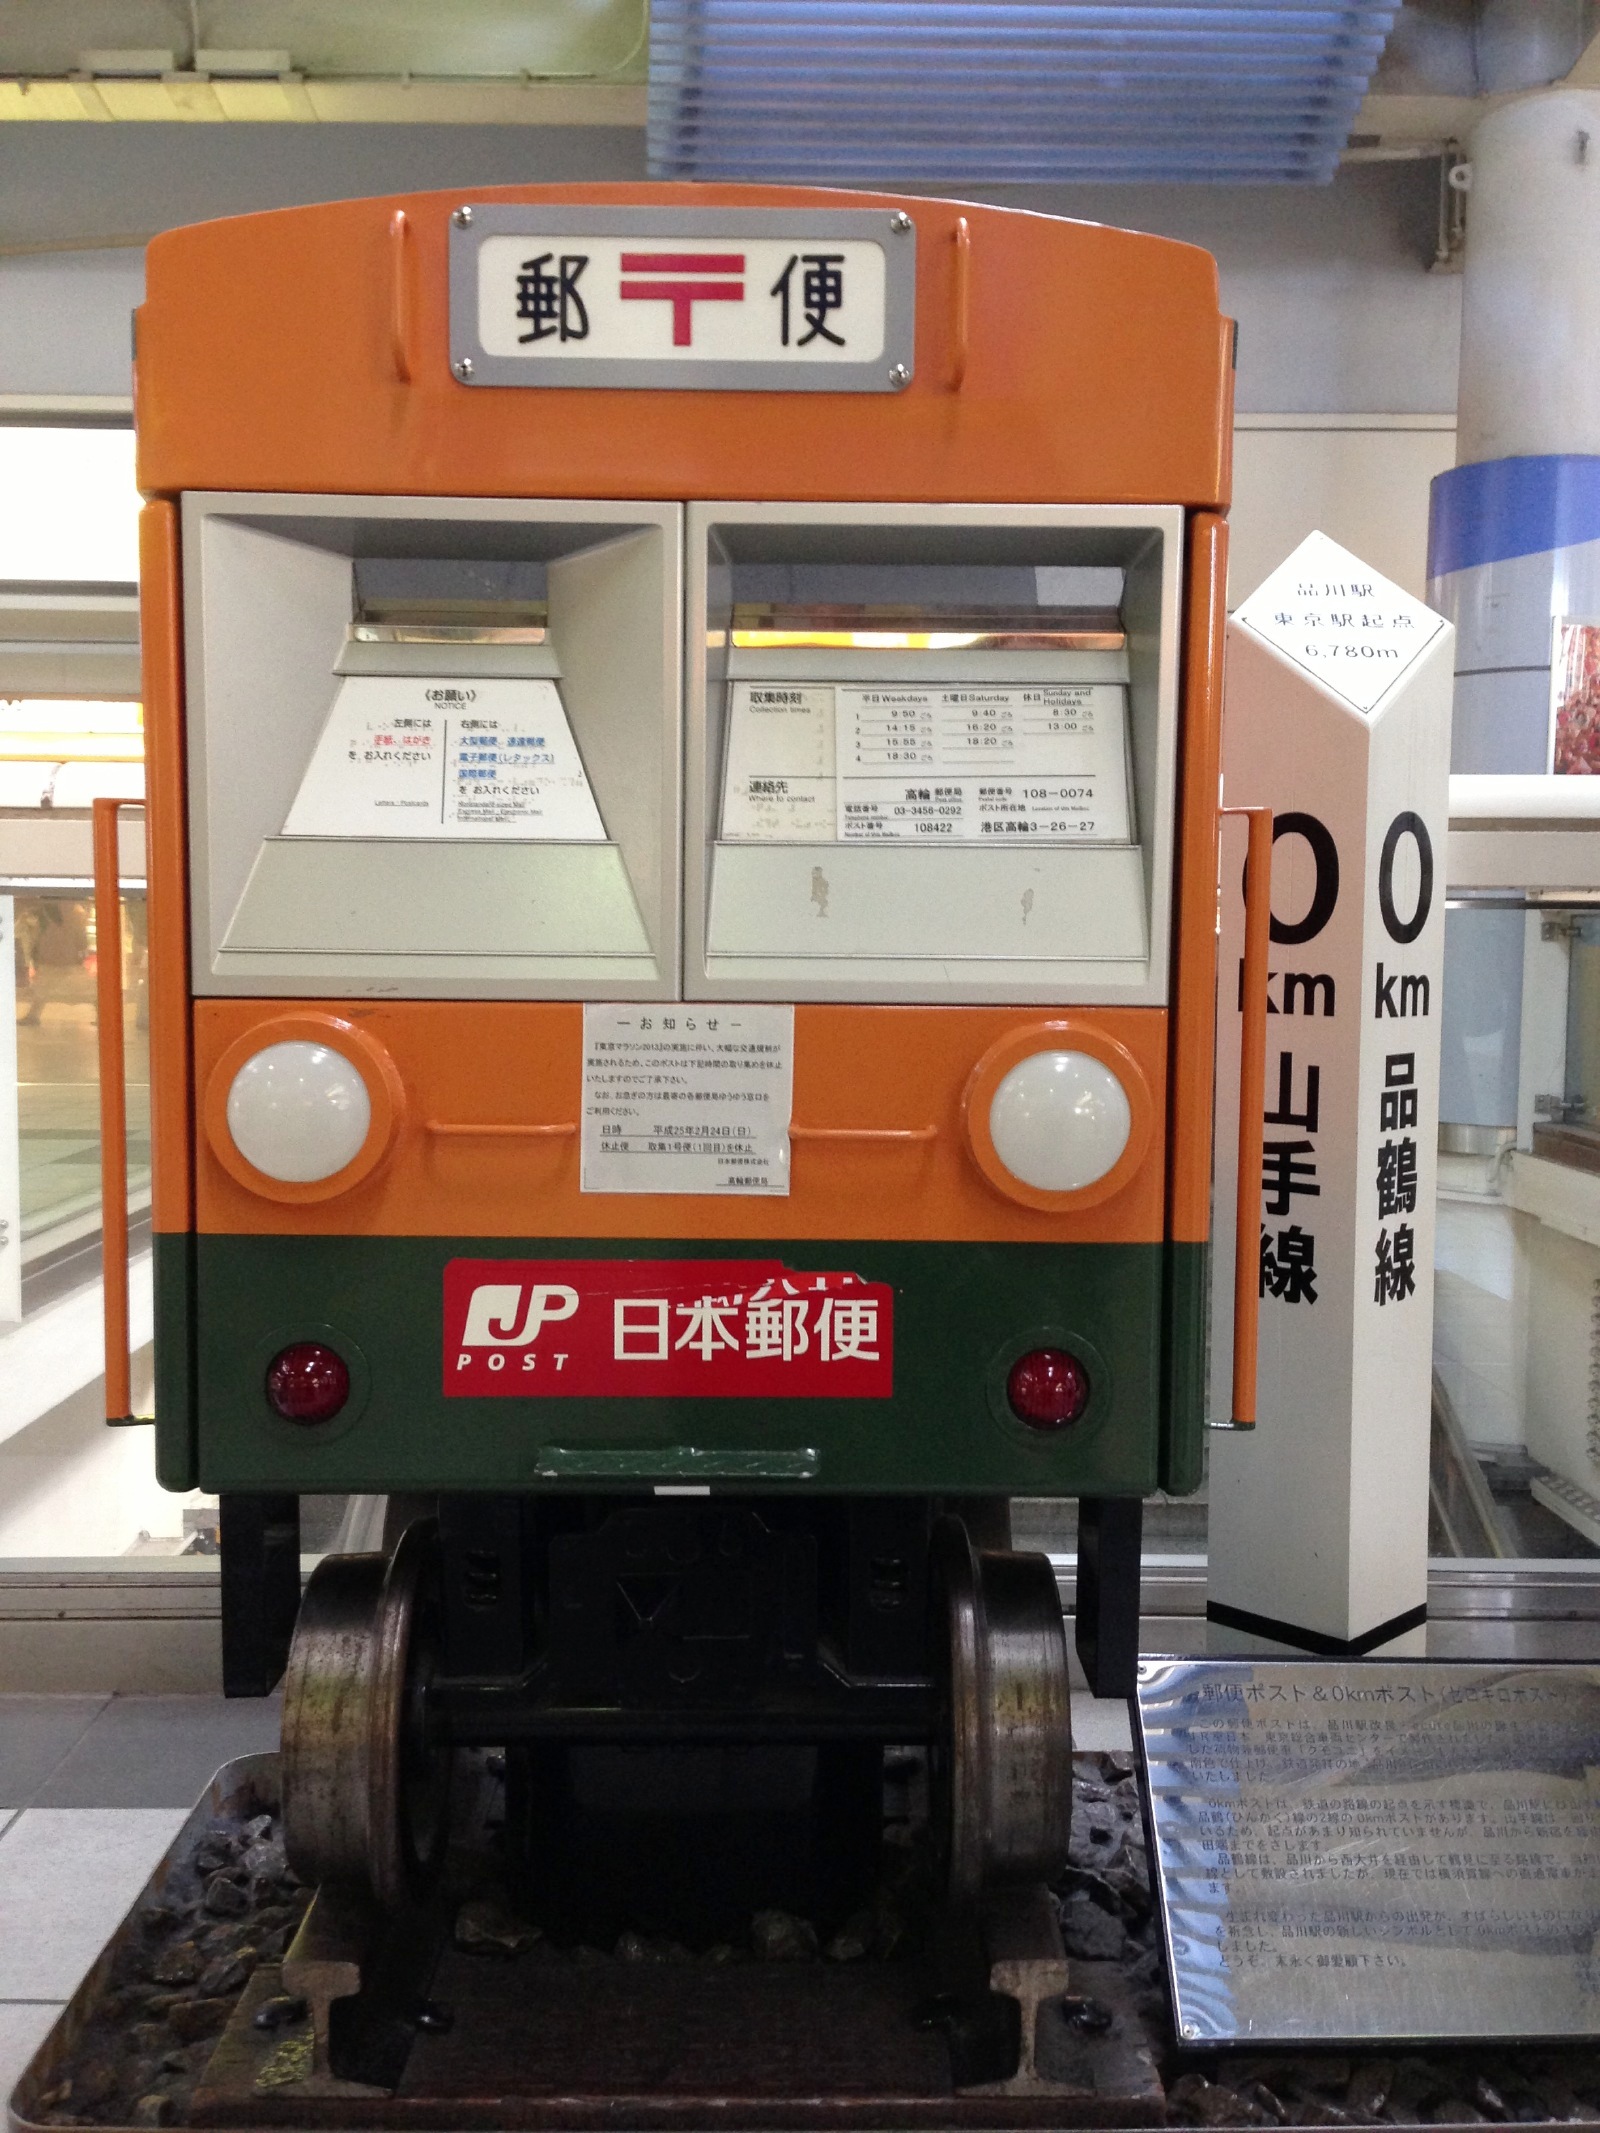 Train post at Shinagawa station